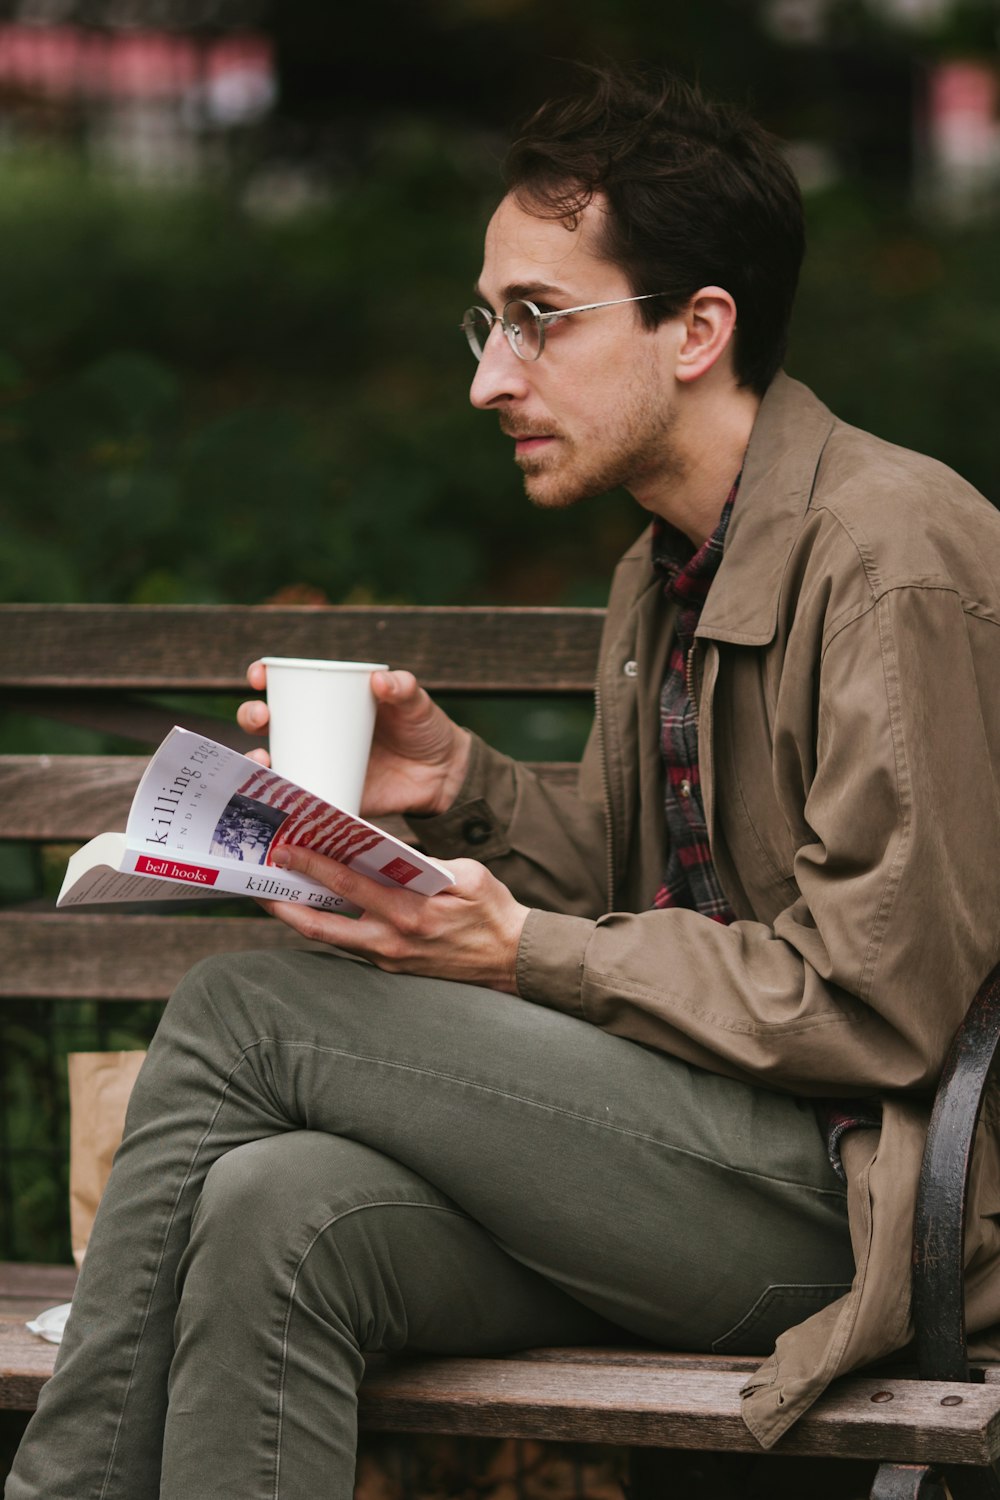 갈색 가죽 재킷과 회색 데님 청바지를 입은 남자가 벤치에 앉아 책을 읽고 있습니다.